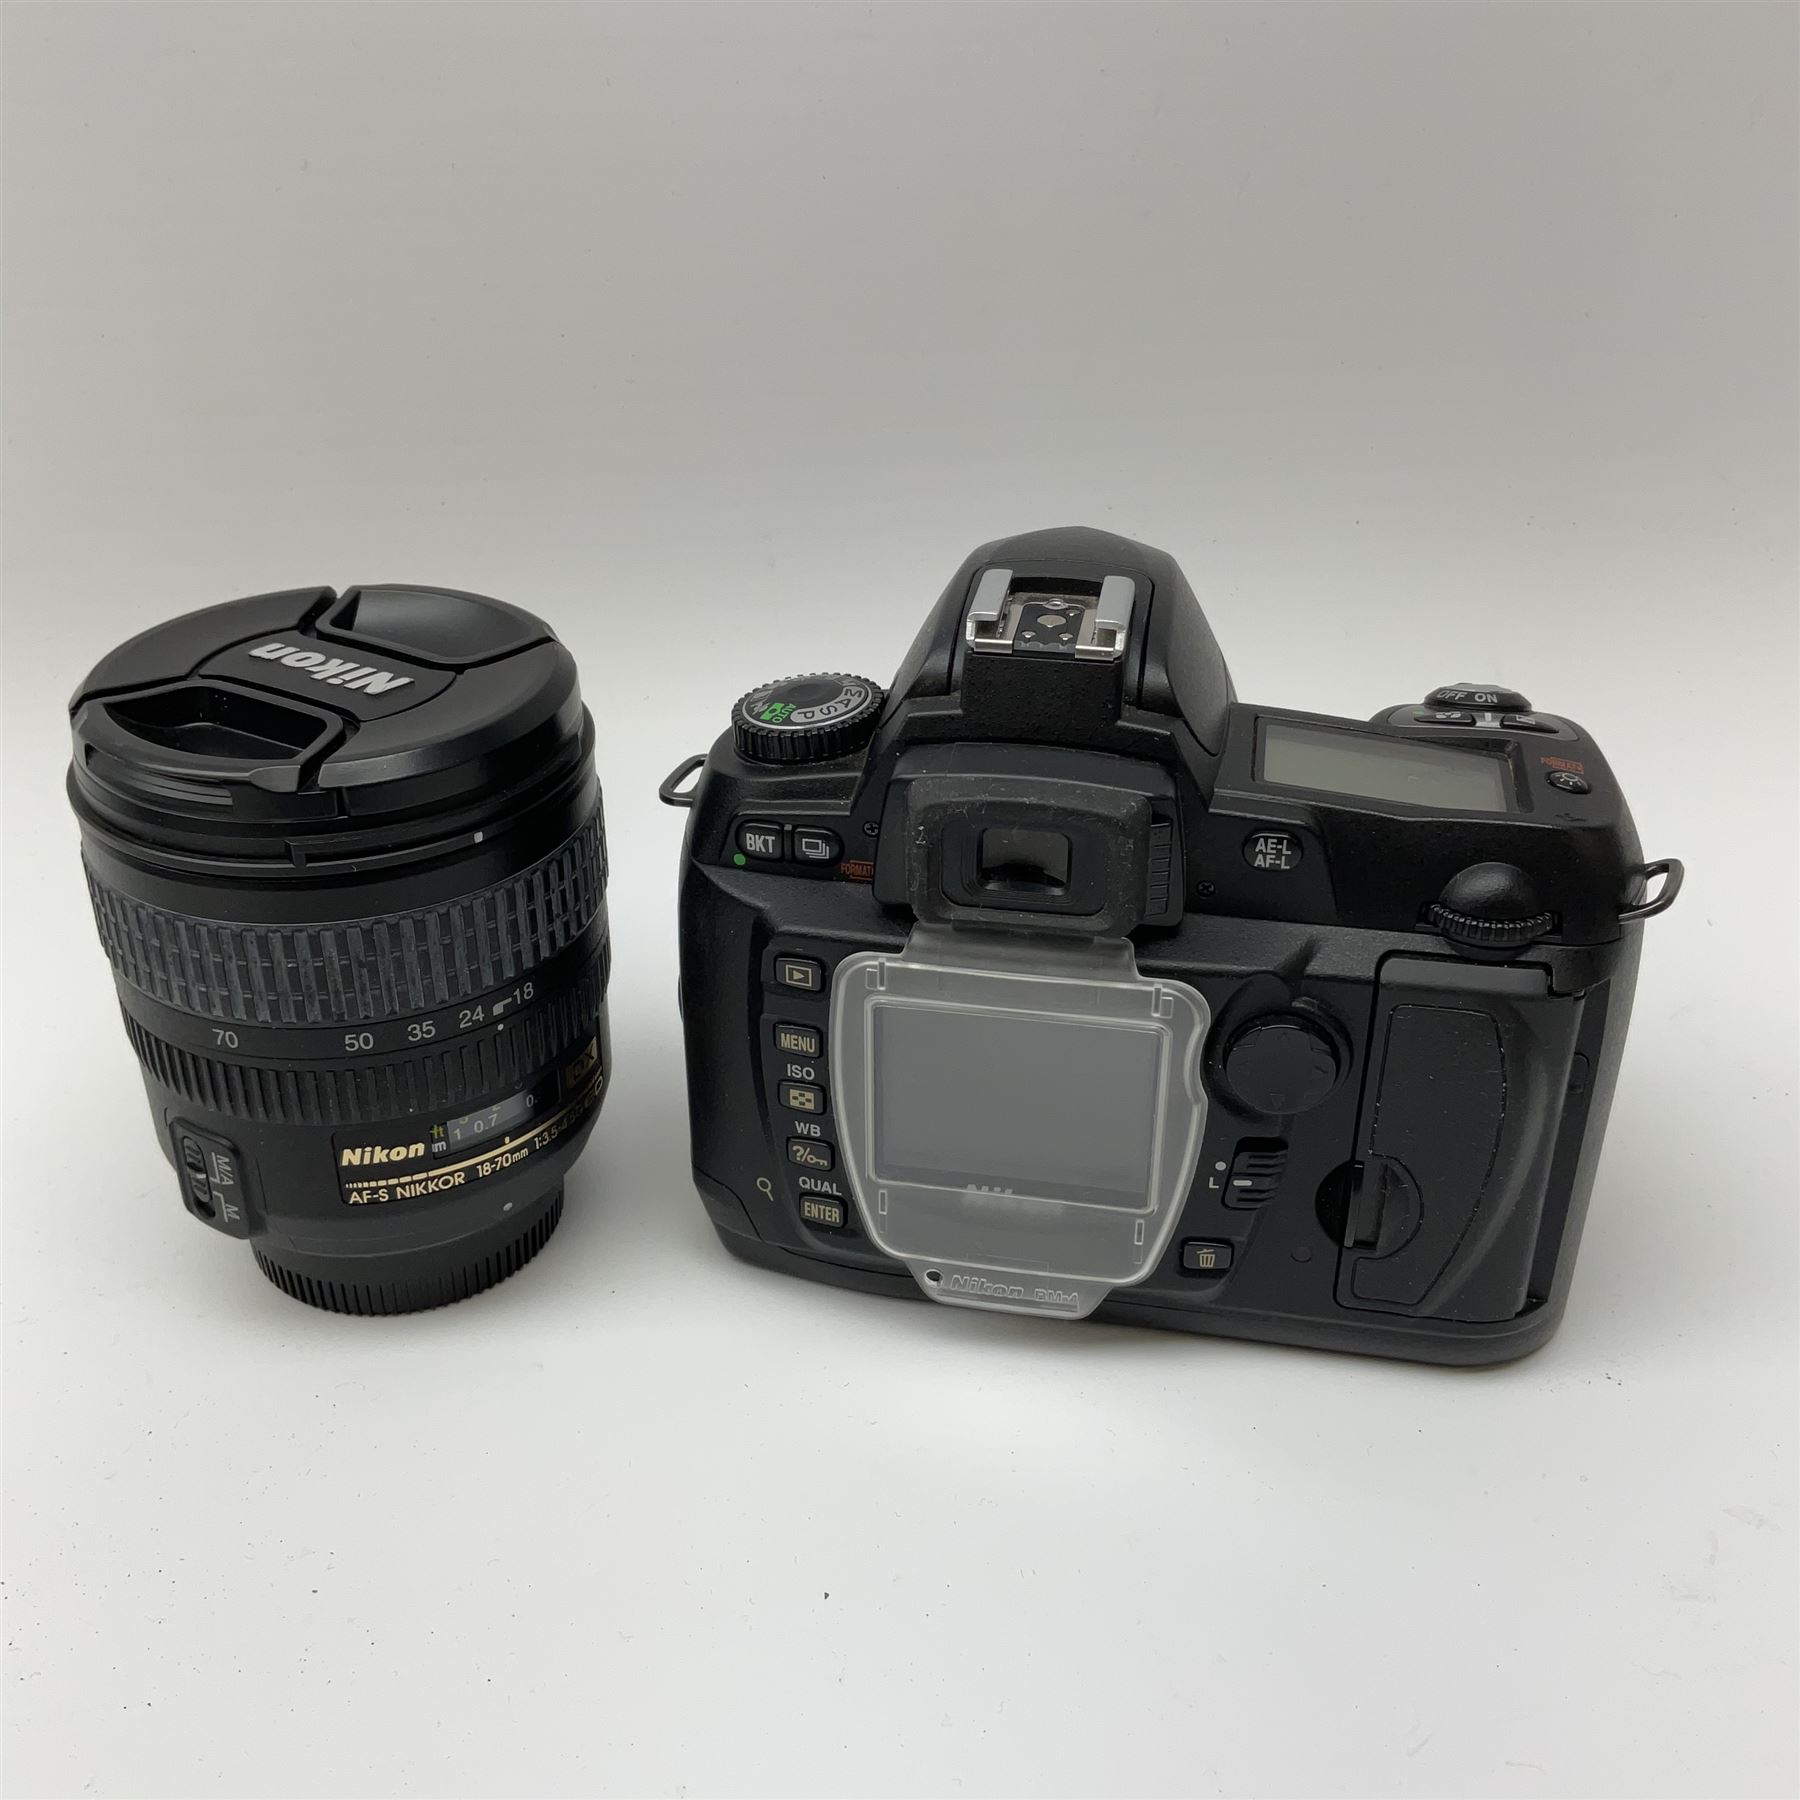 Nikon D70 Kit with AF-S Zoom Nikkor 18-70mm f/3.5~4.5G lens - Image 4 of 8